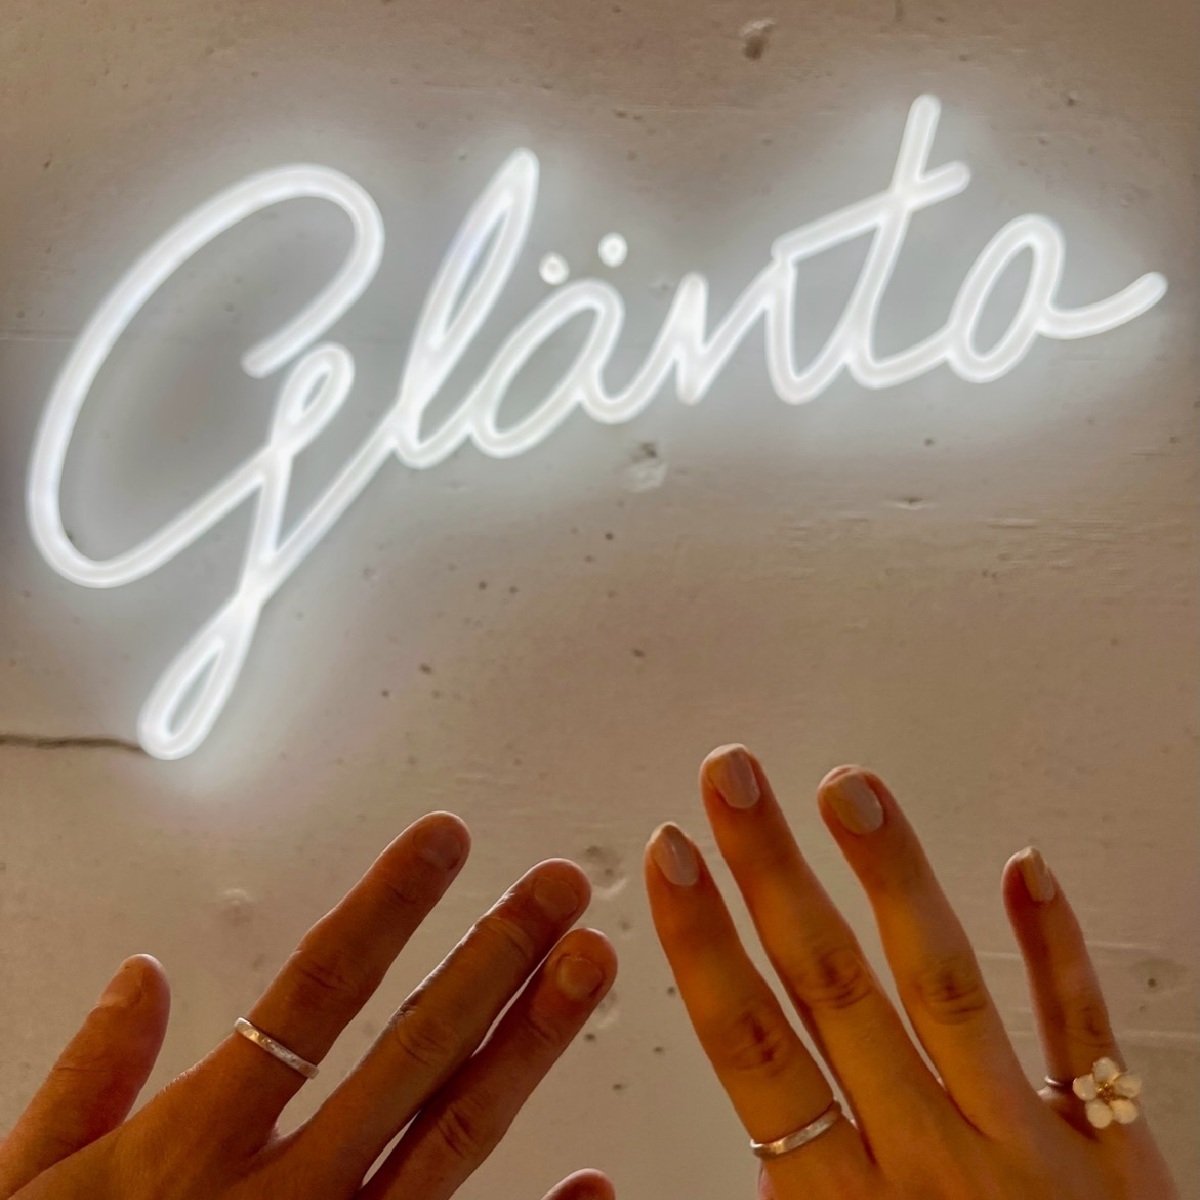 【鎌倉×体験】自分だけの指輪作り体験ができるアトリエ『glänta』💍